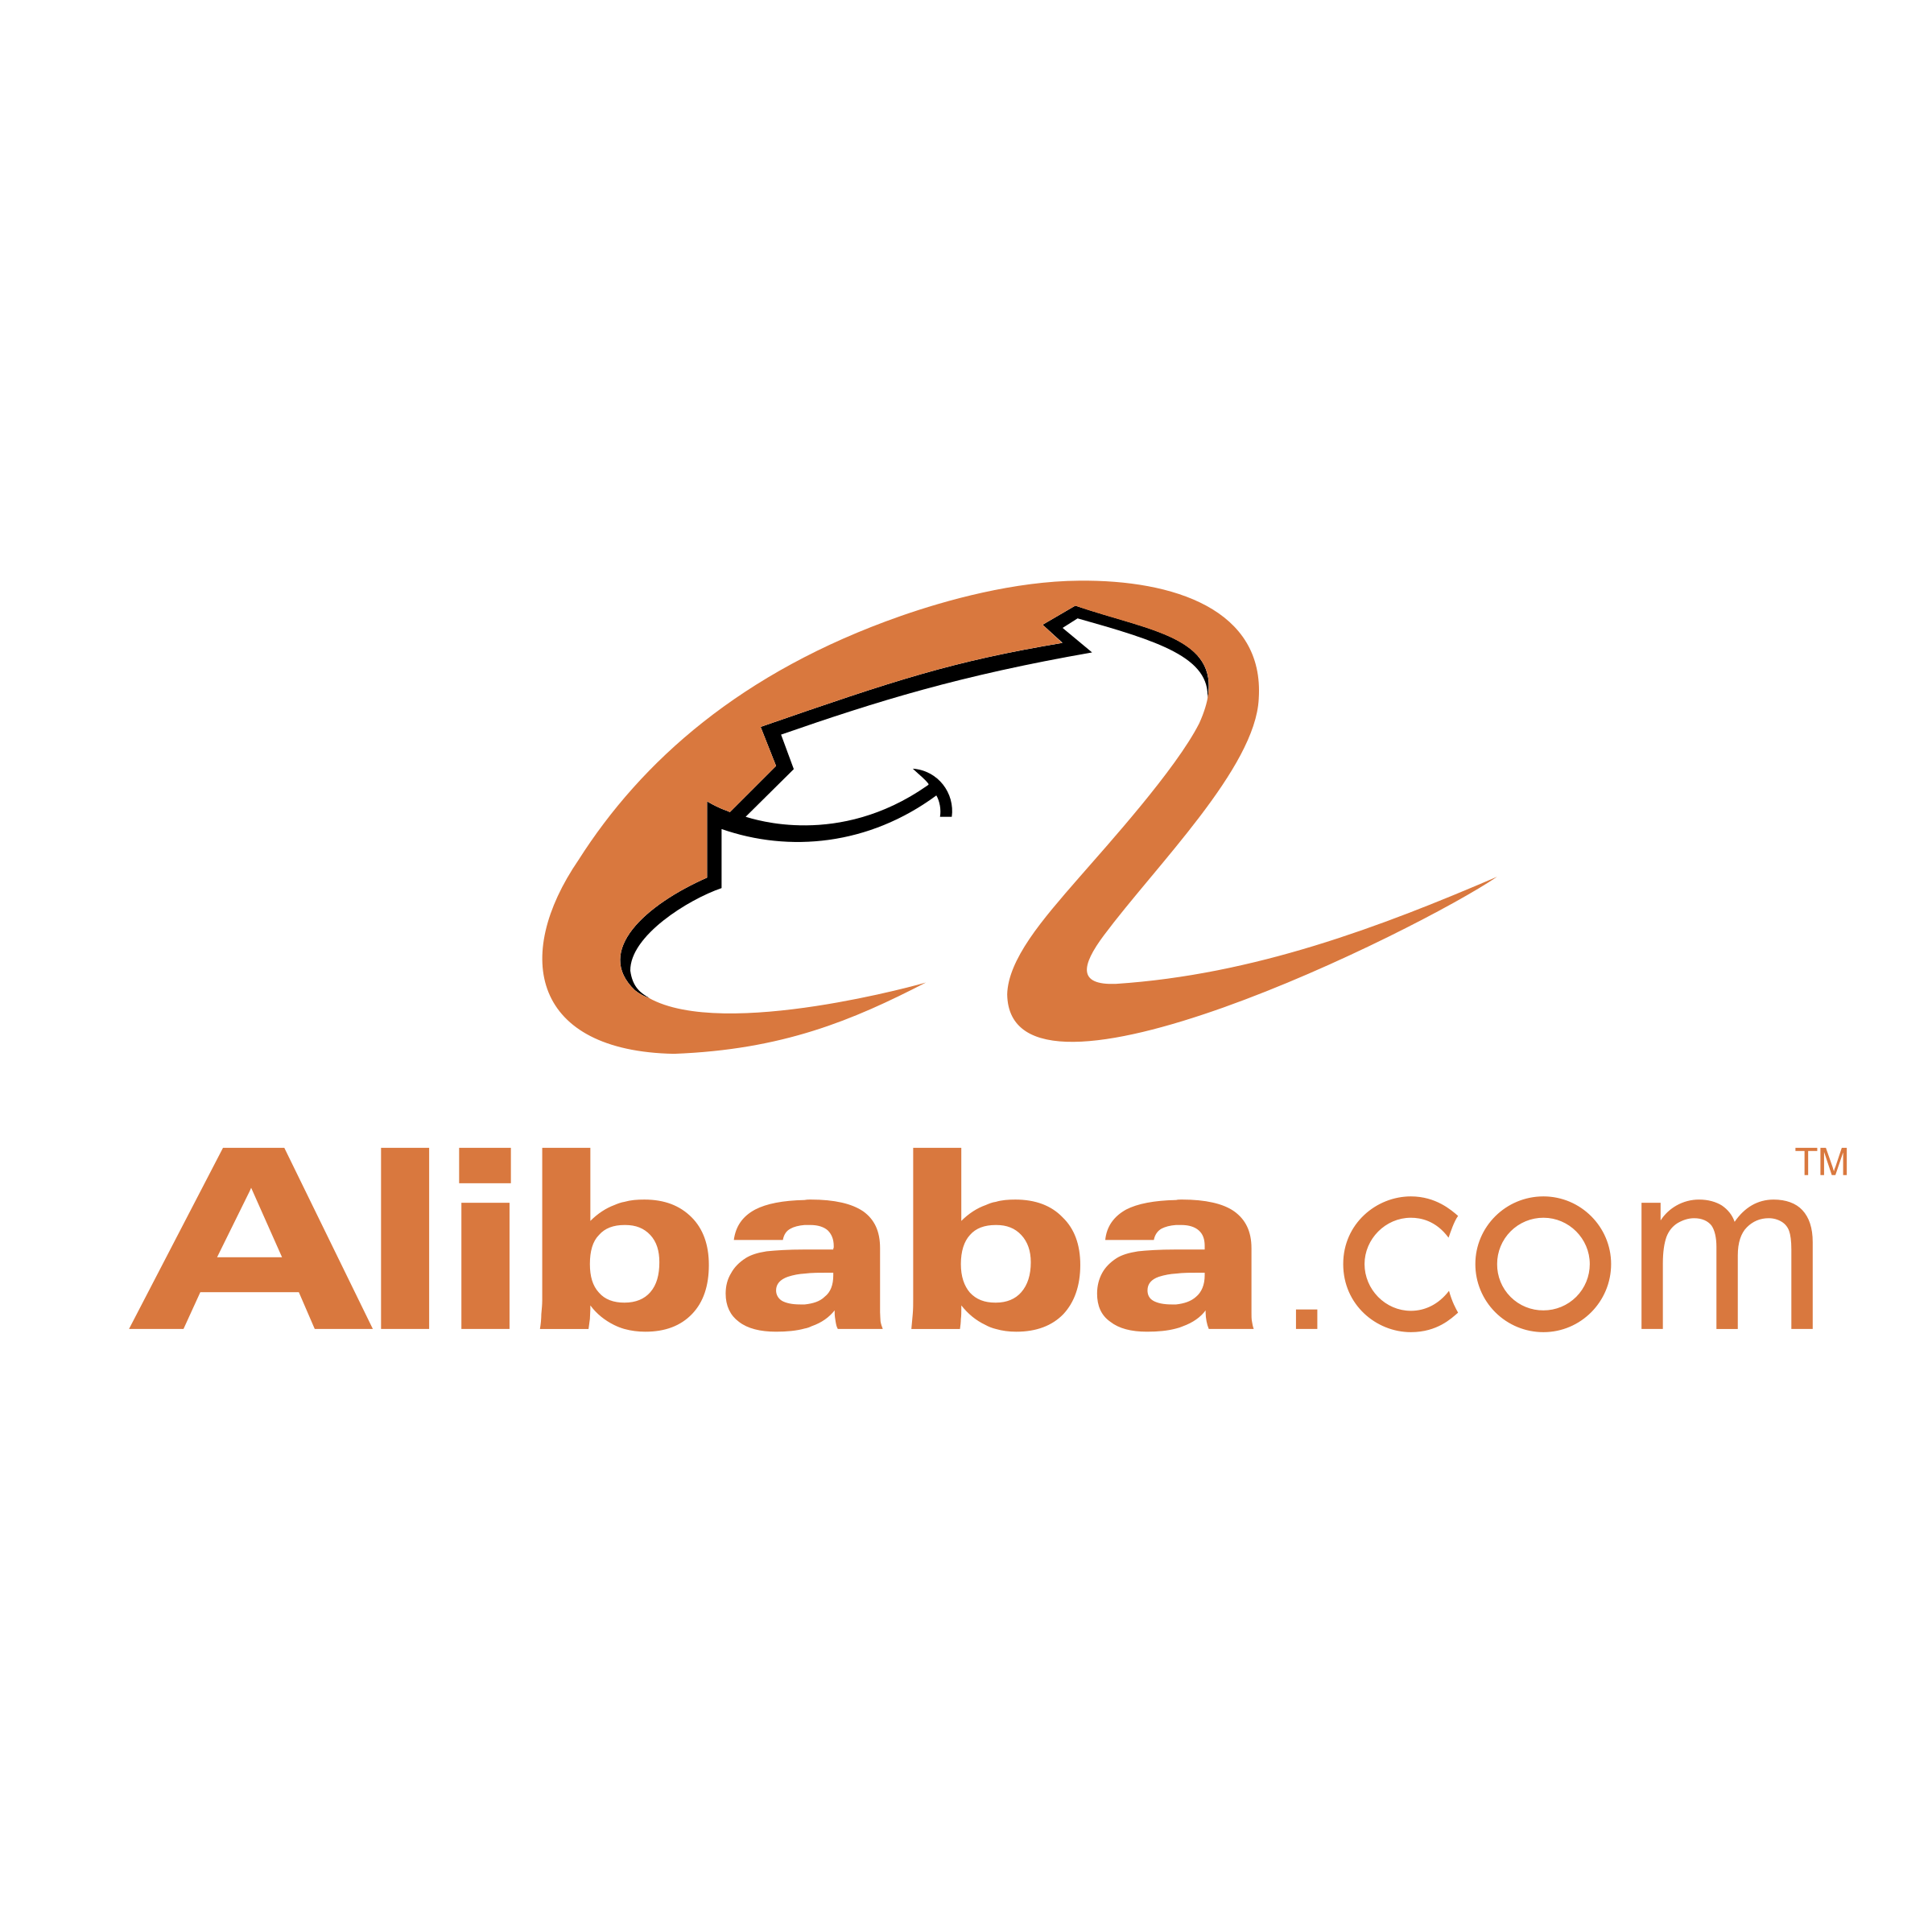 Alibaba.com Logo - alibaba-com-logo-png-transparent - Redbytes: Custom Mobile ...